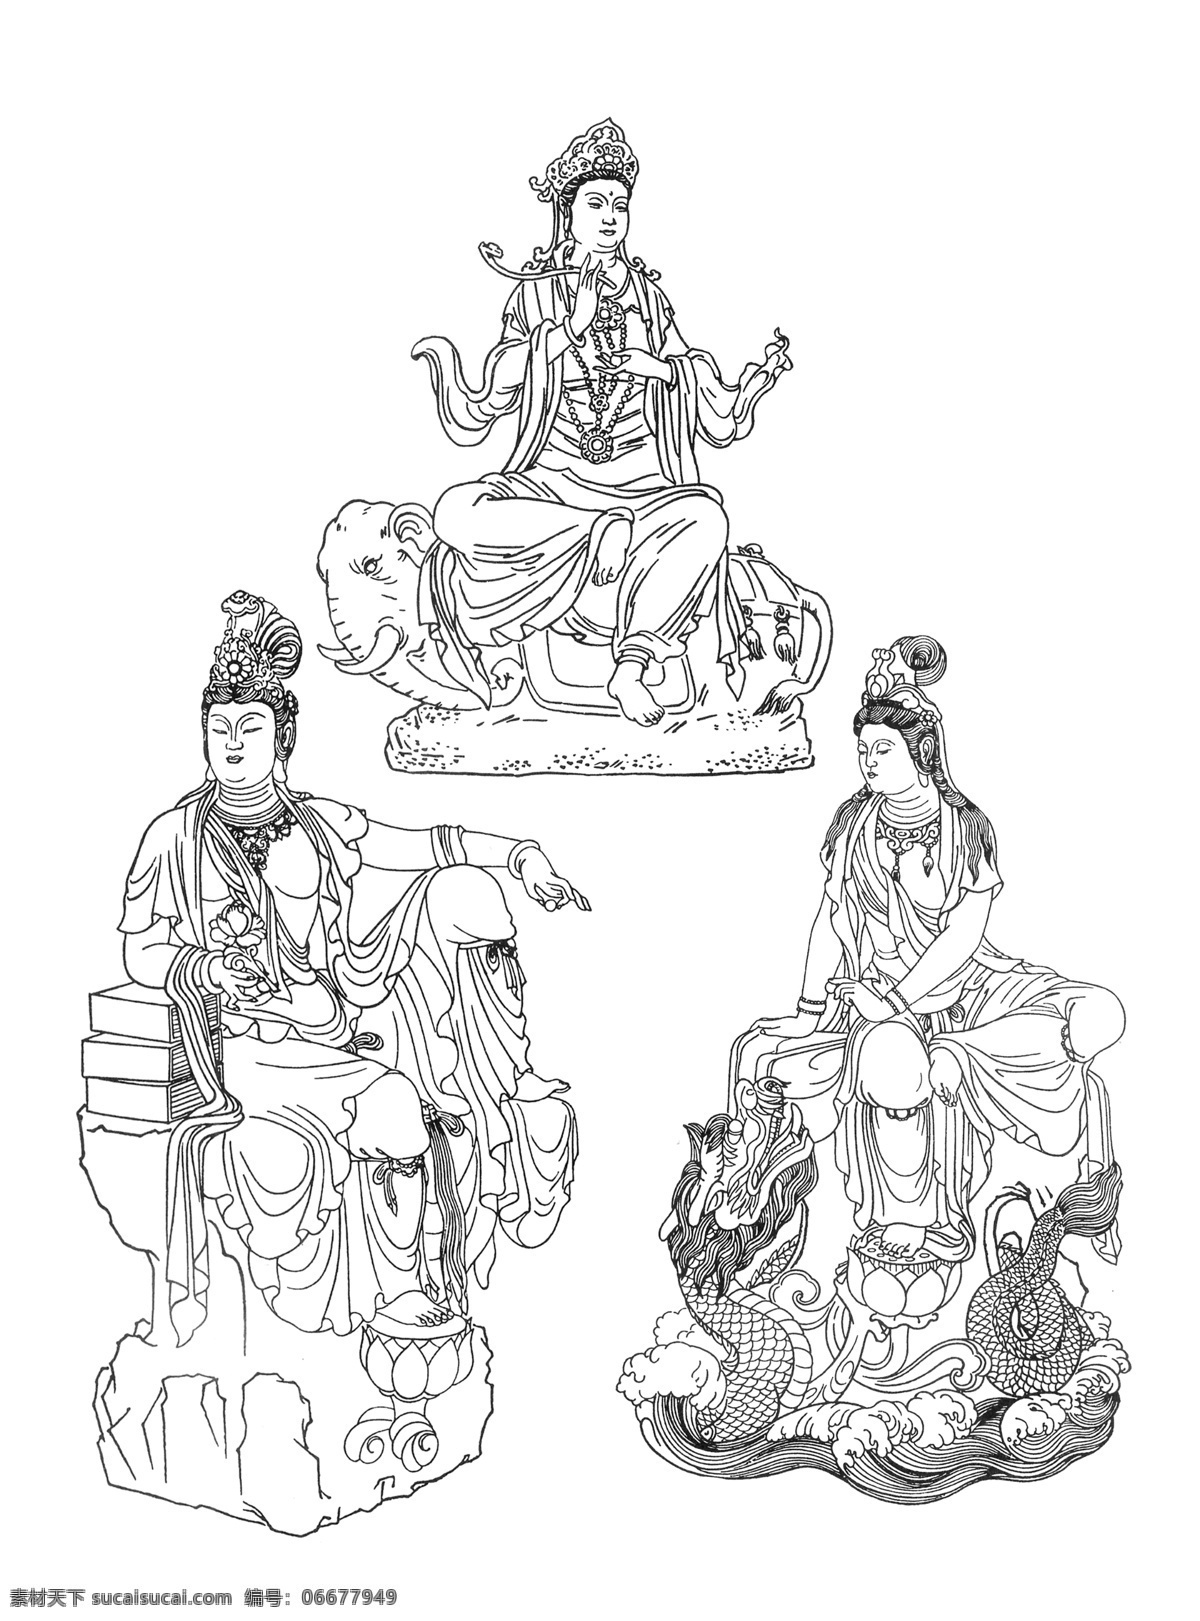 佛教元素线稿 佛教元素 线稿 人物 佛像 古典 佛教文化 白色